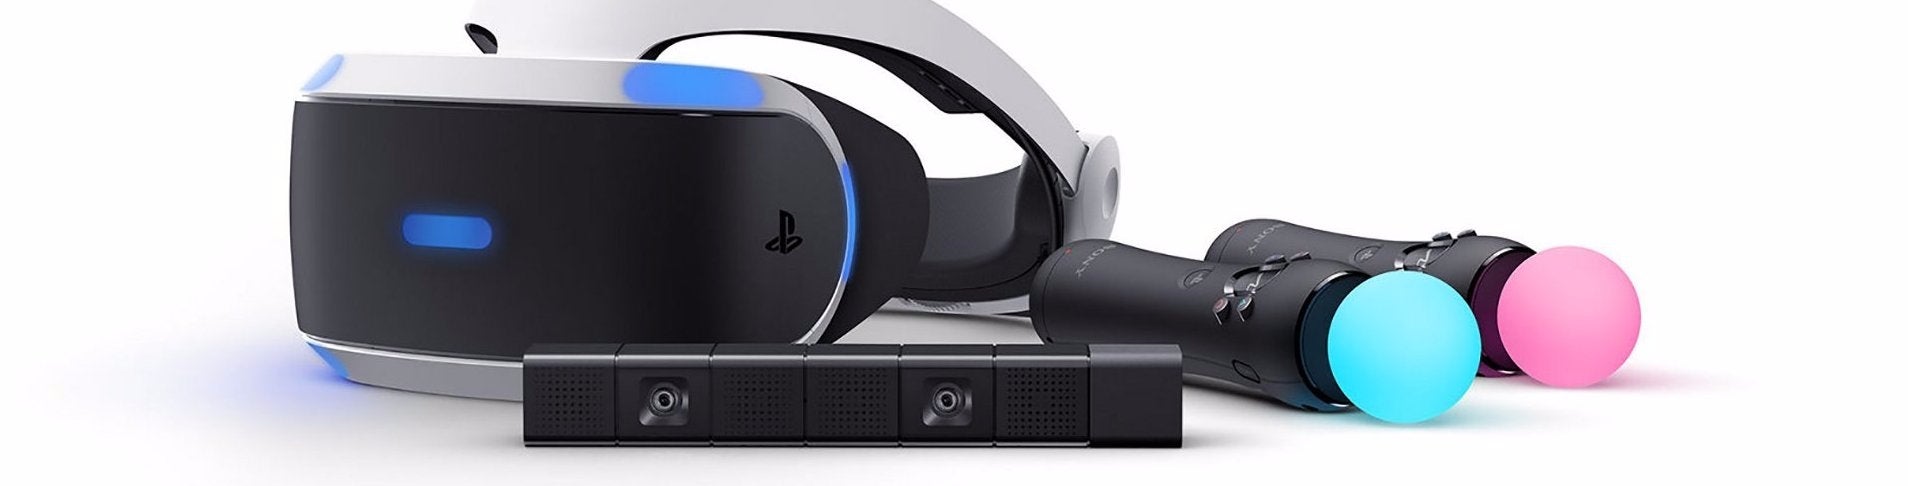 Afbeeldingen van PlayStation VR hardware review - VReview